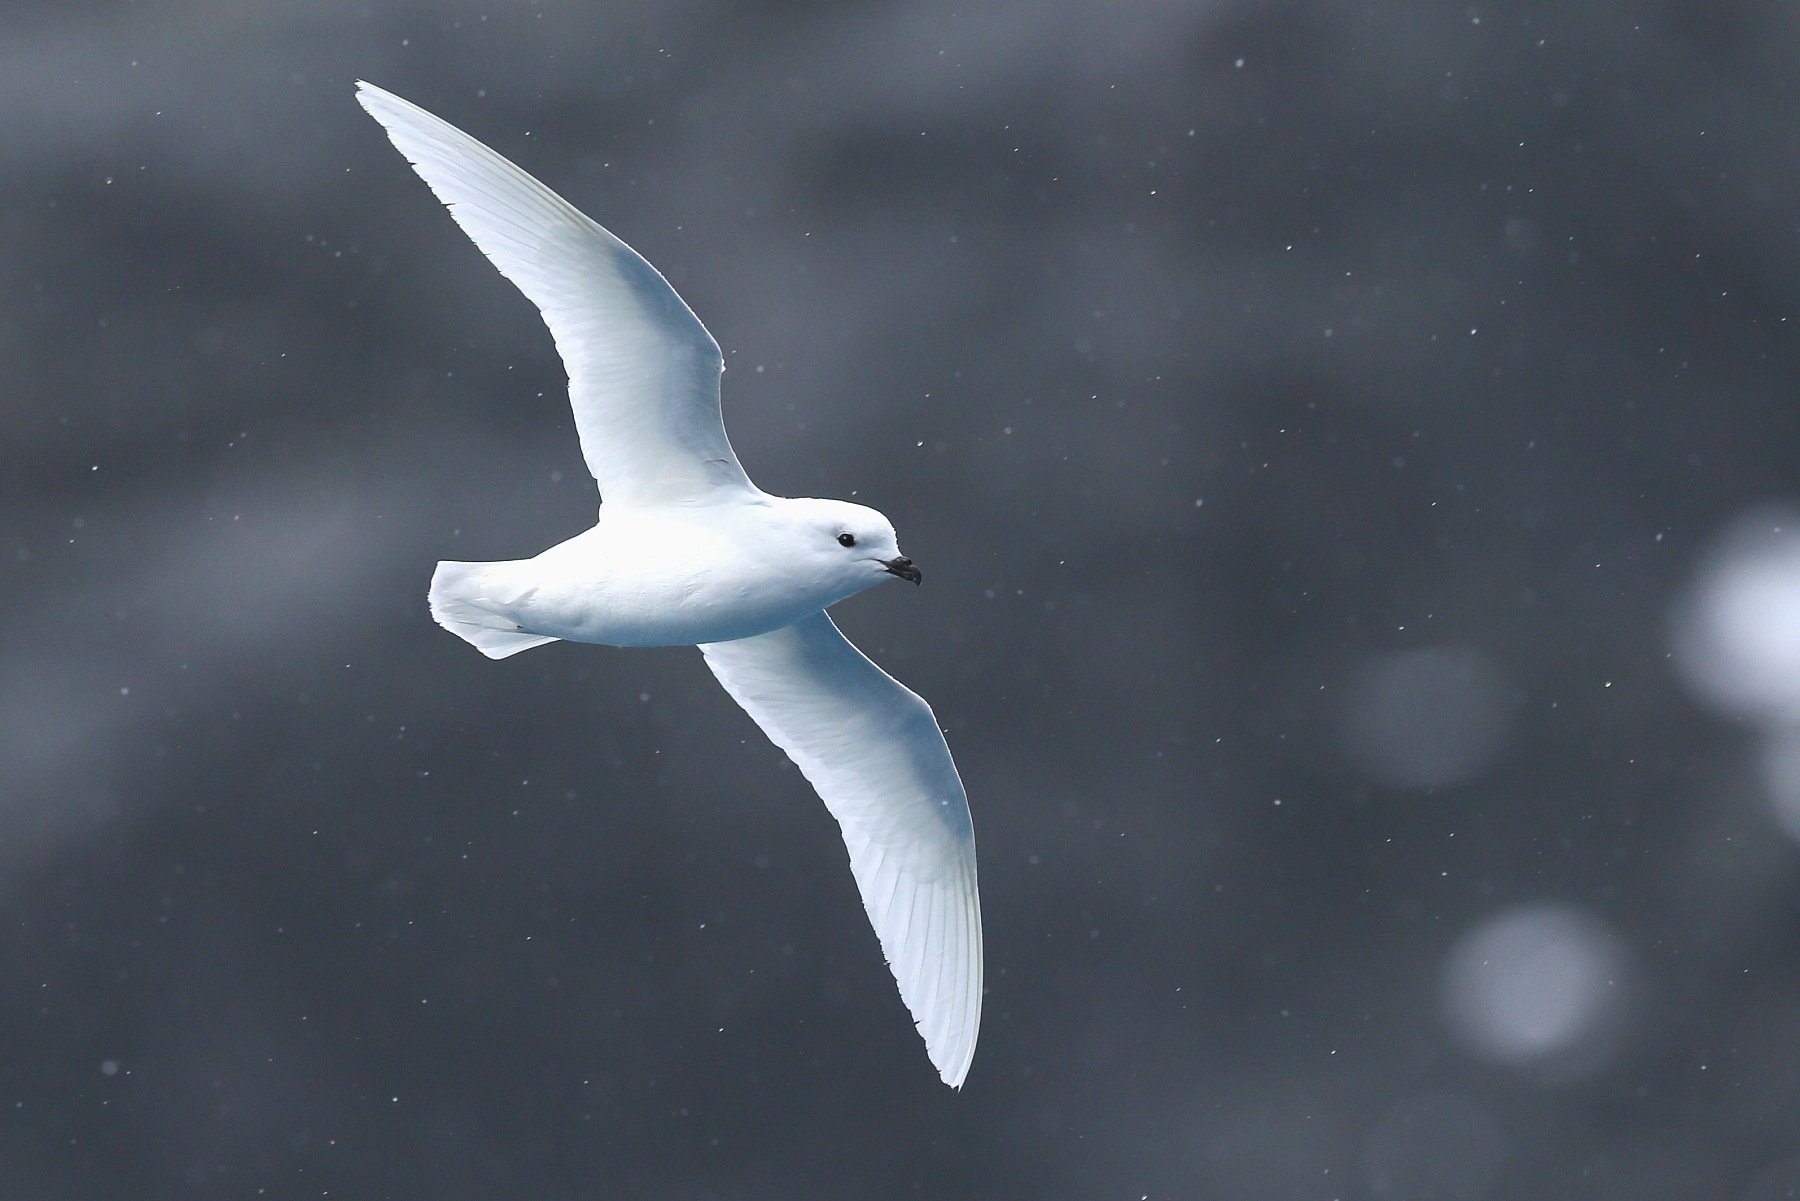 Snow Petrel in flight